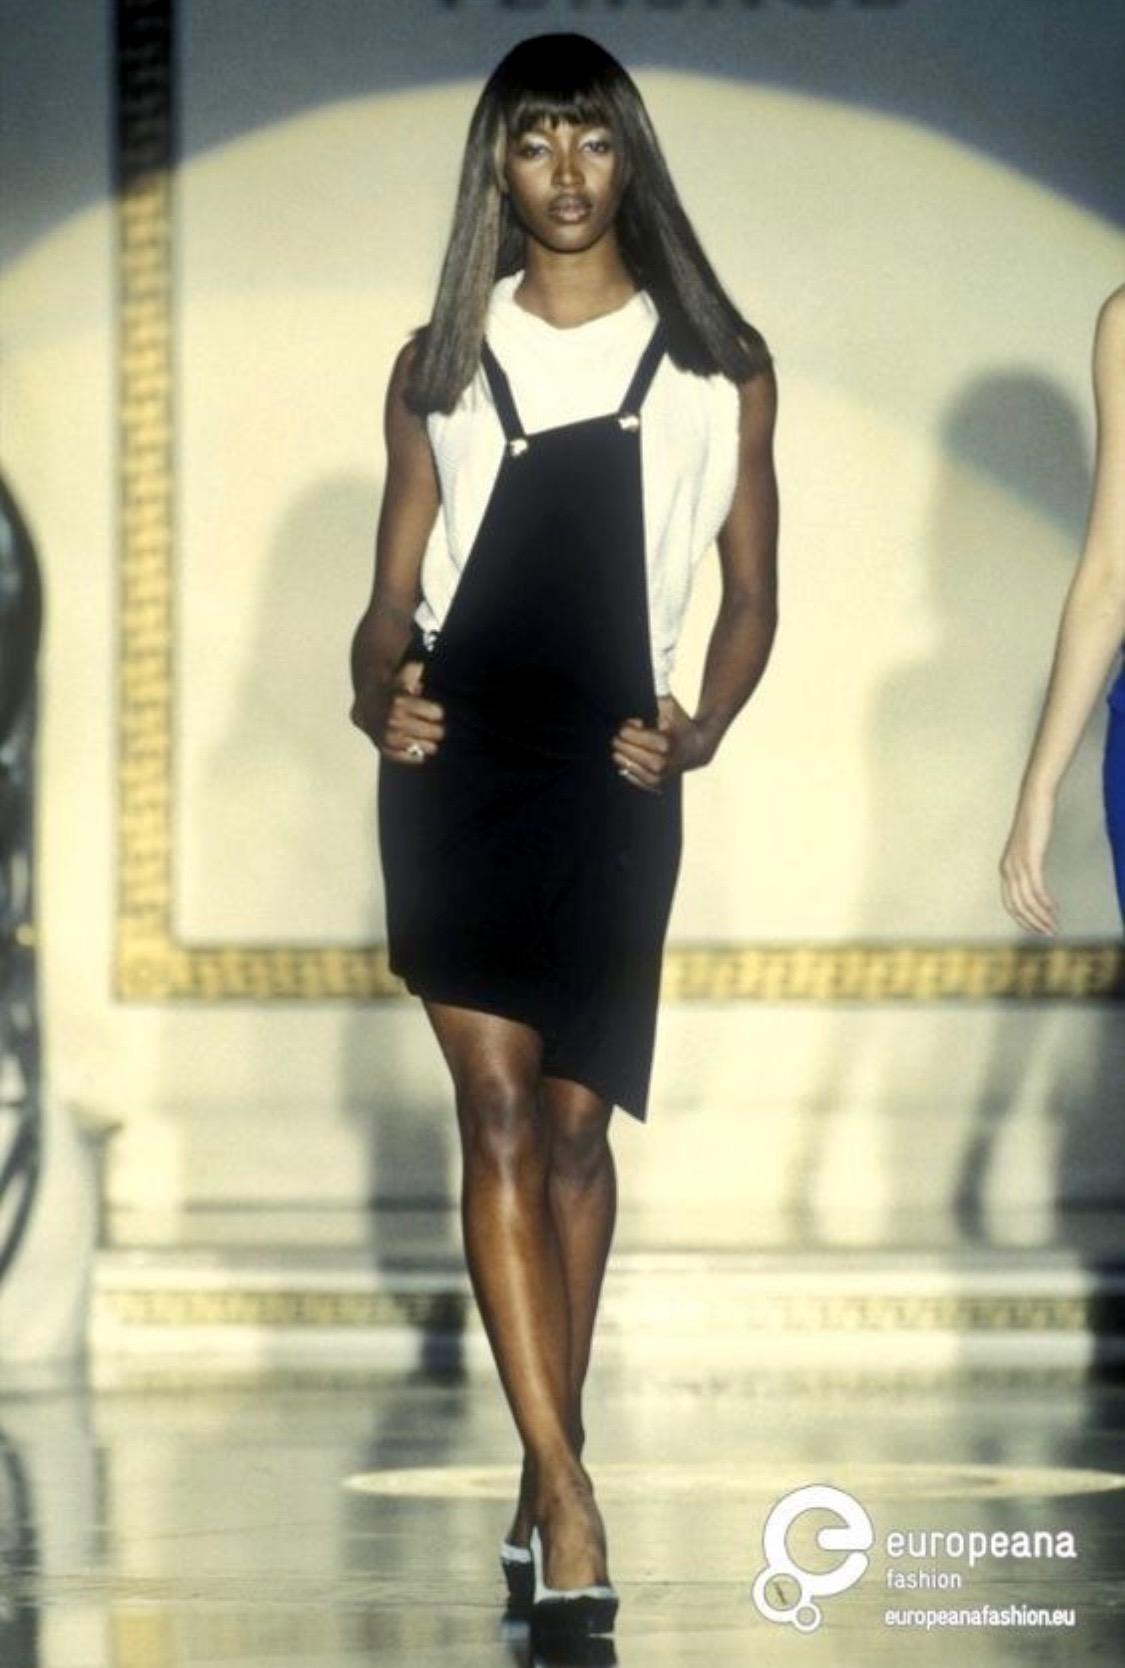 Présentation d'une magnifique robe à clip Gianni Versace Couture, dos nu, conçue par Gianni Versace. Issue de la collection printemps/été 1994, cette pièce n'est pas apparue sur le défilé de prêt-à-porter, mais une pièce presque identique a été